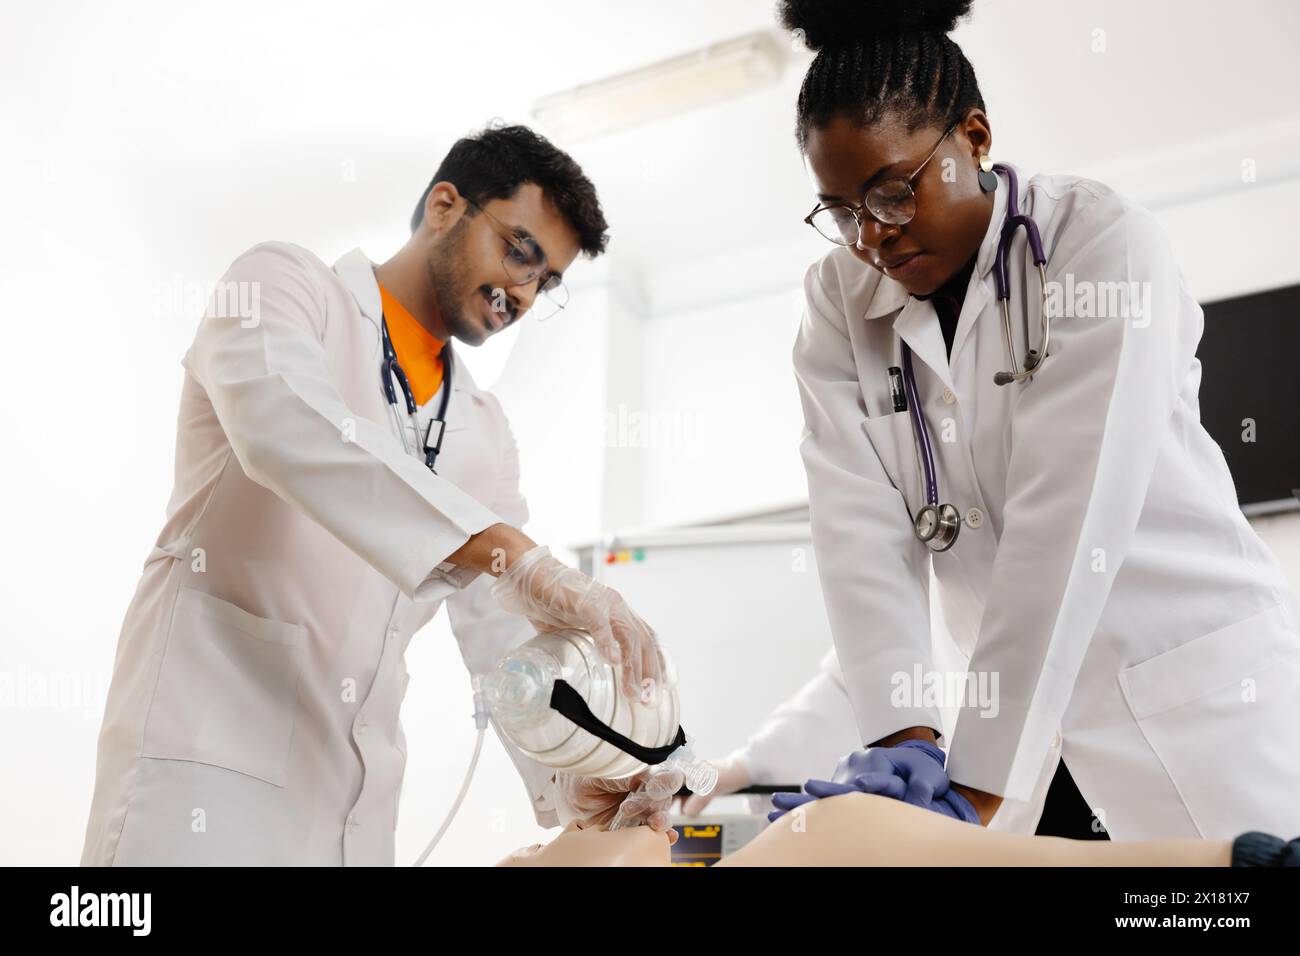 Un paio di medici professionisti stanno eseguendo con attenzione una procedura su un paziente in un ambiente ospedaliero. Foto Stock